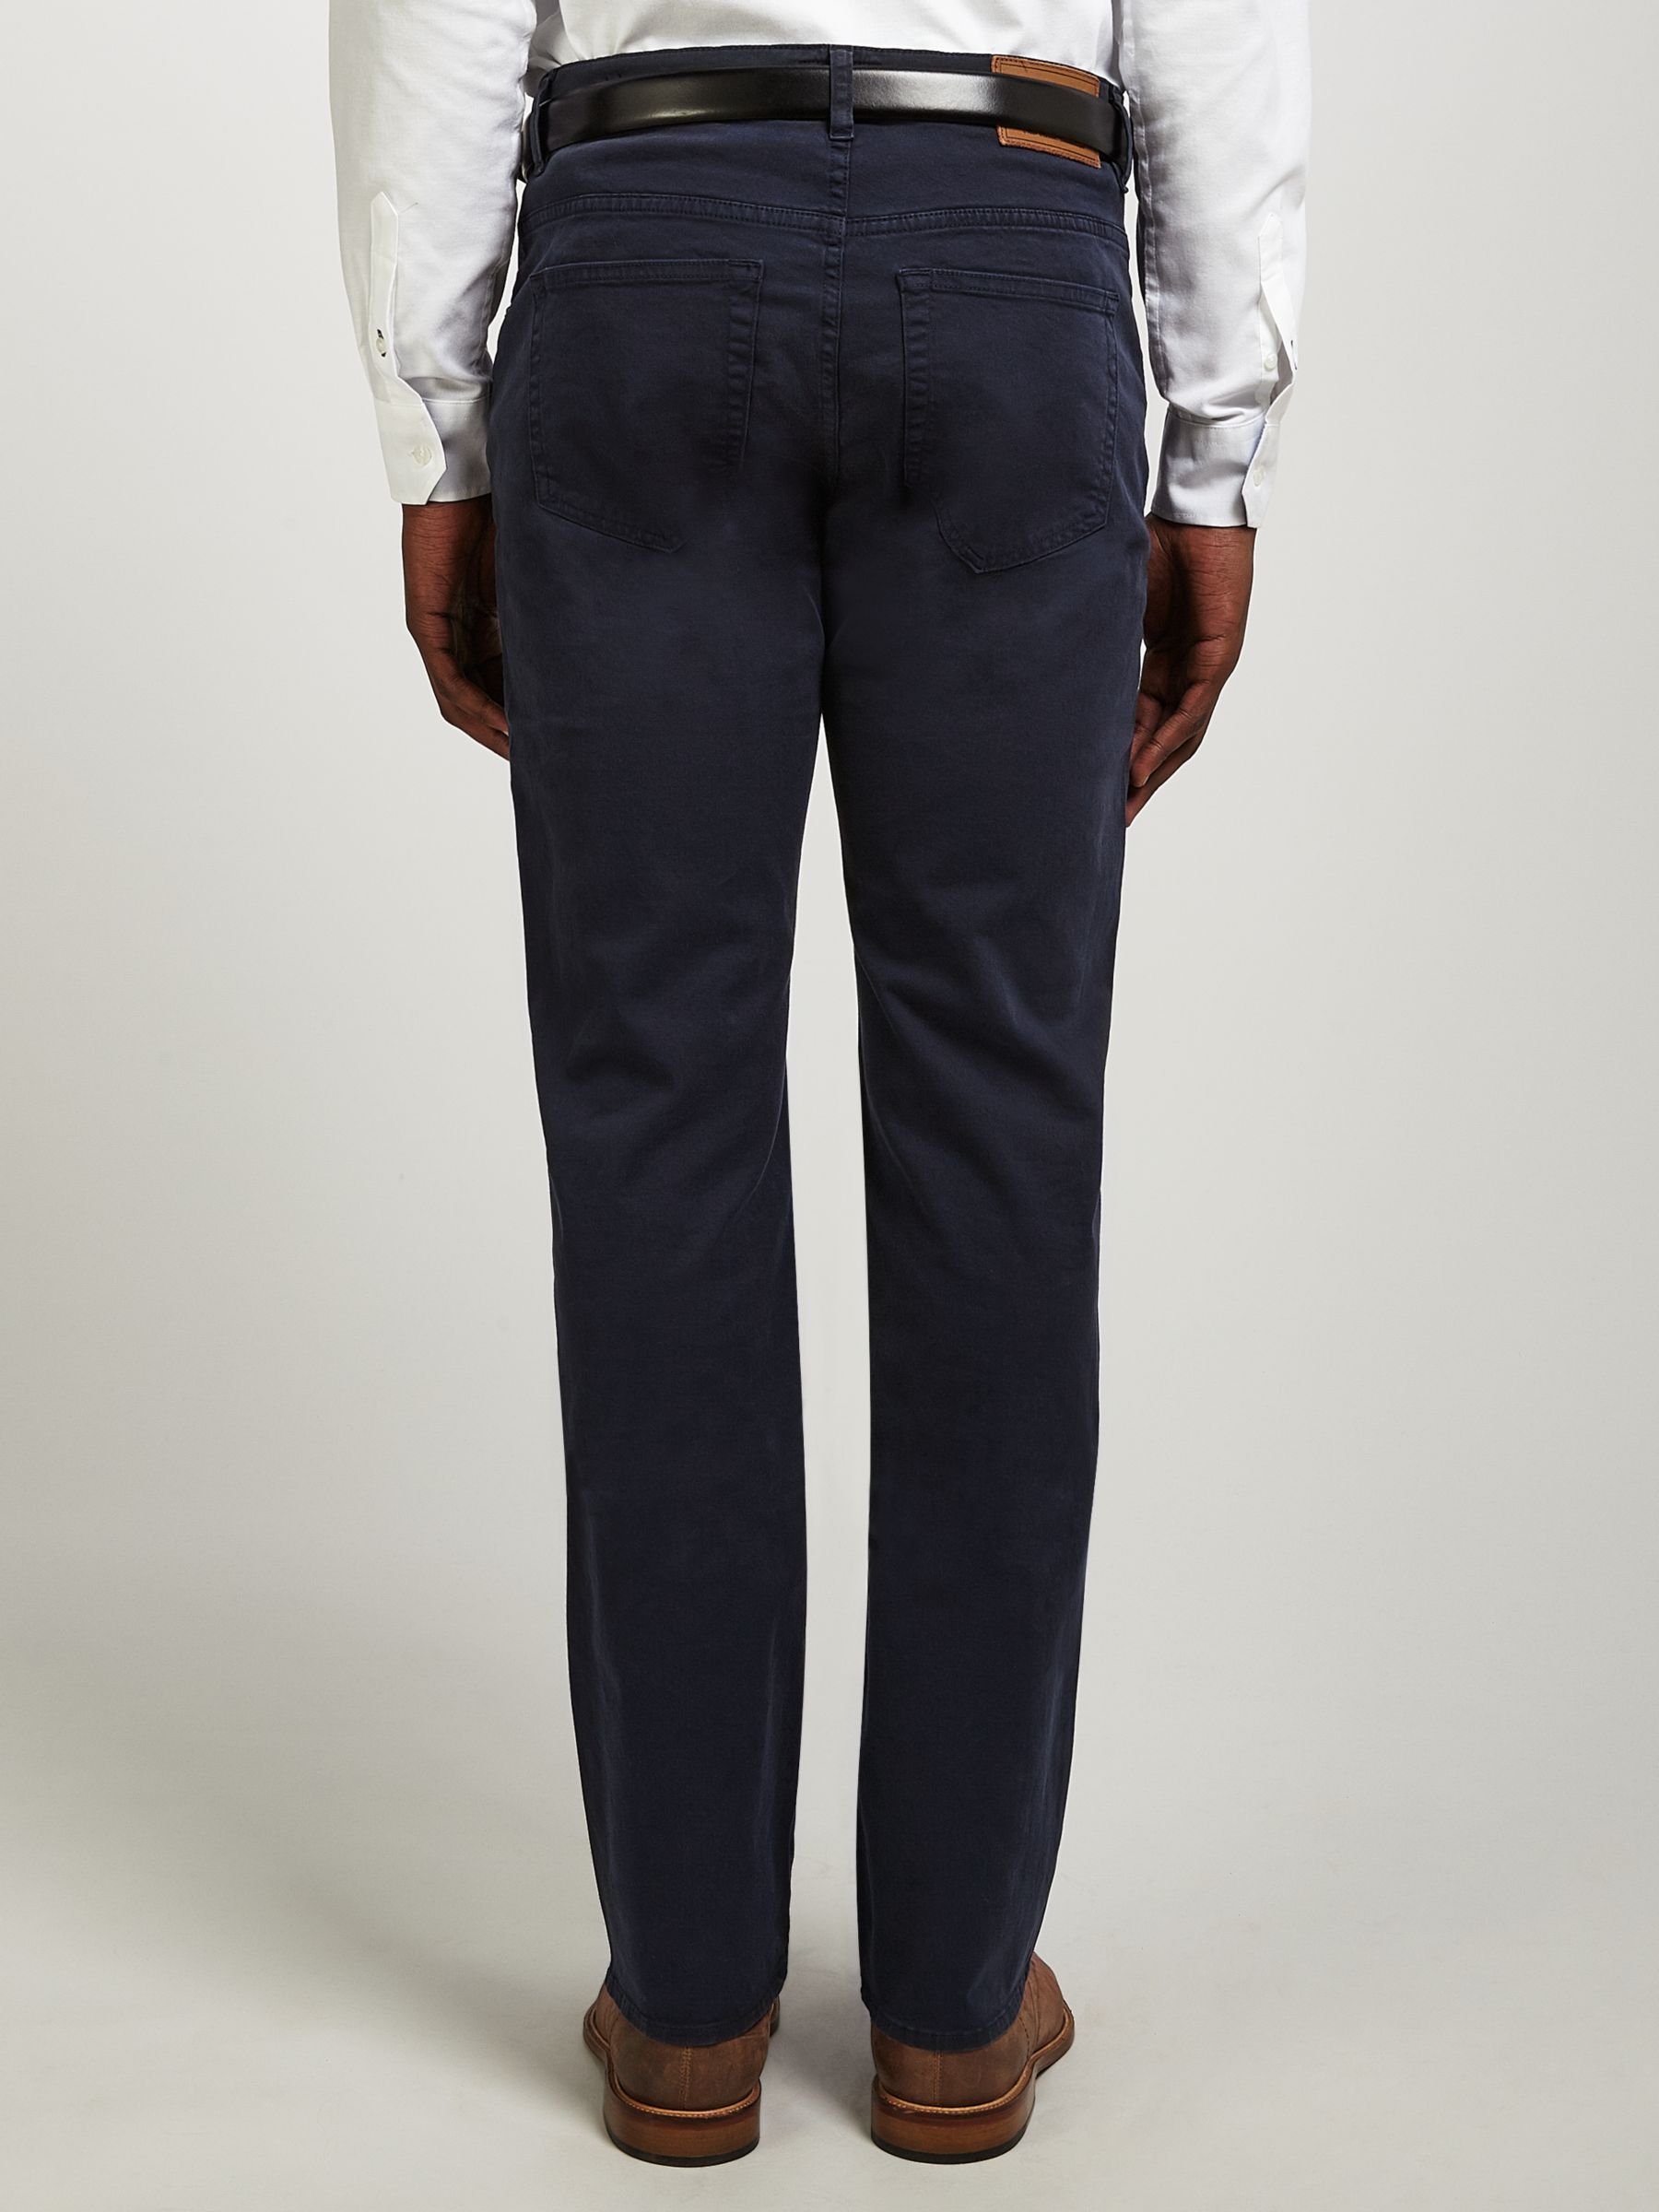 GANT Regular Straight Fit Desert Twill Jeans, Navy at John Lewis & Partners